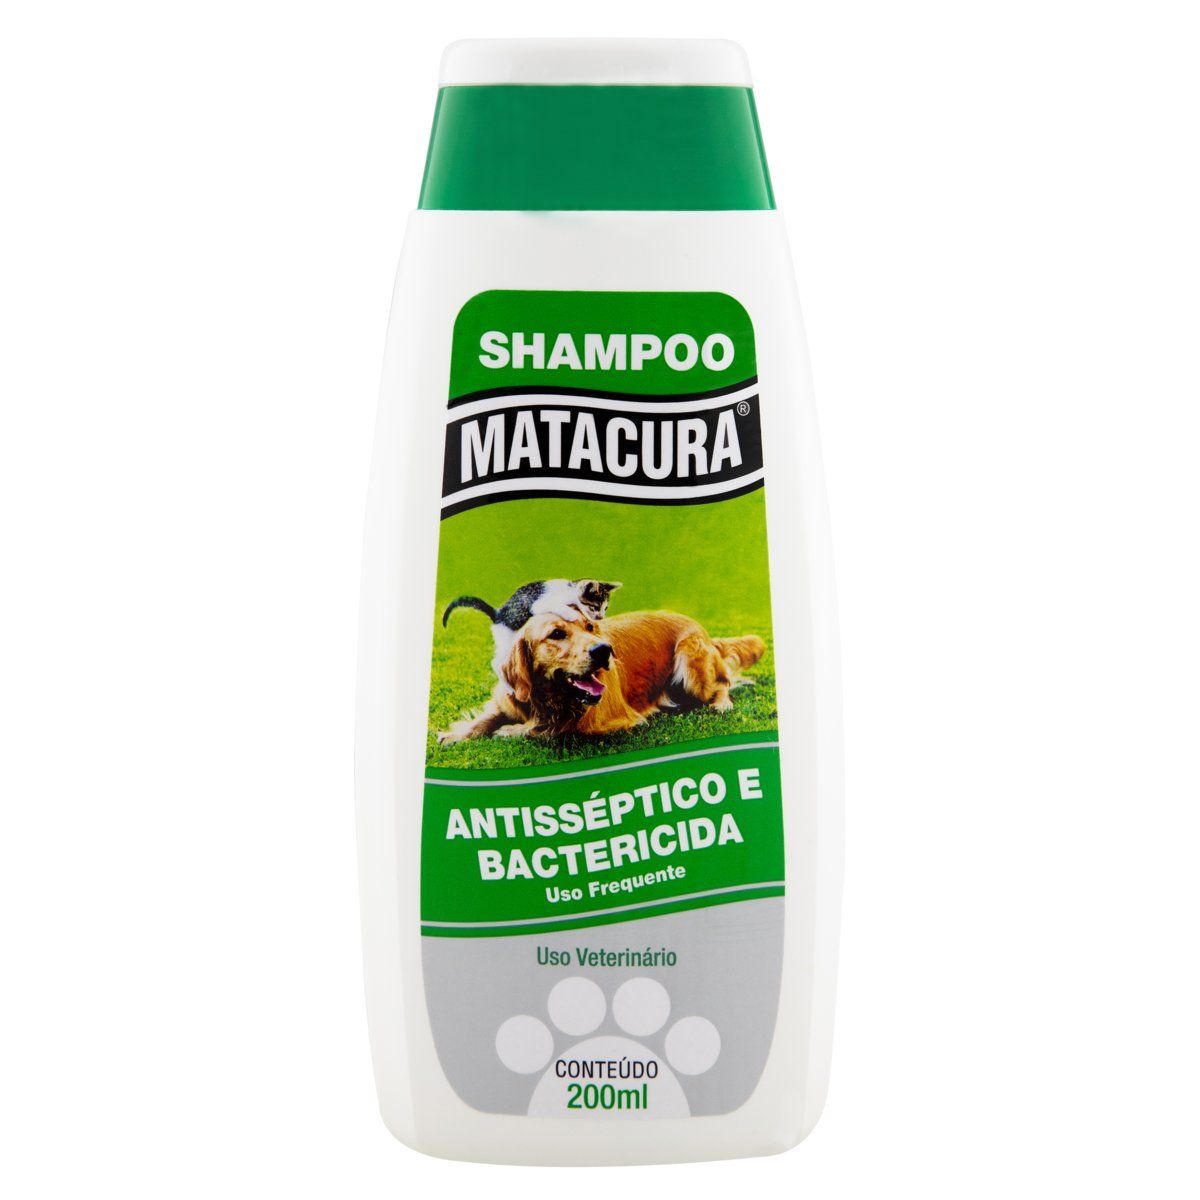 Shampoo para Cães e Gatos Antisséptico e Bactericida Matacura Frasco 200ml